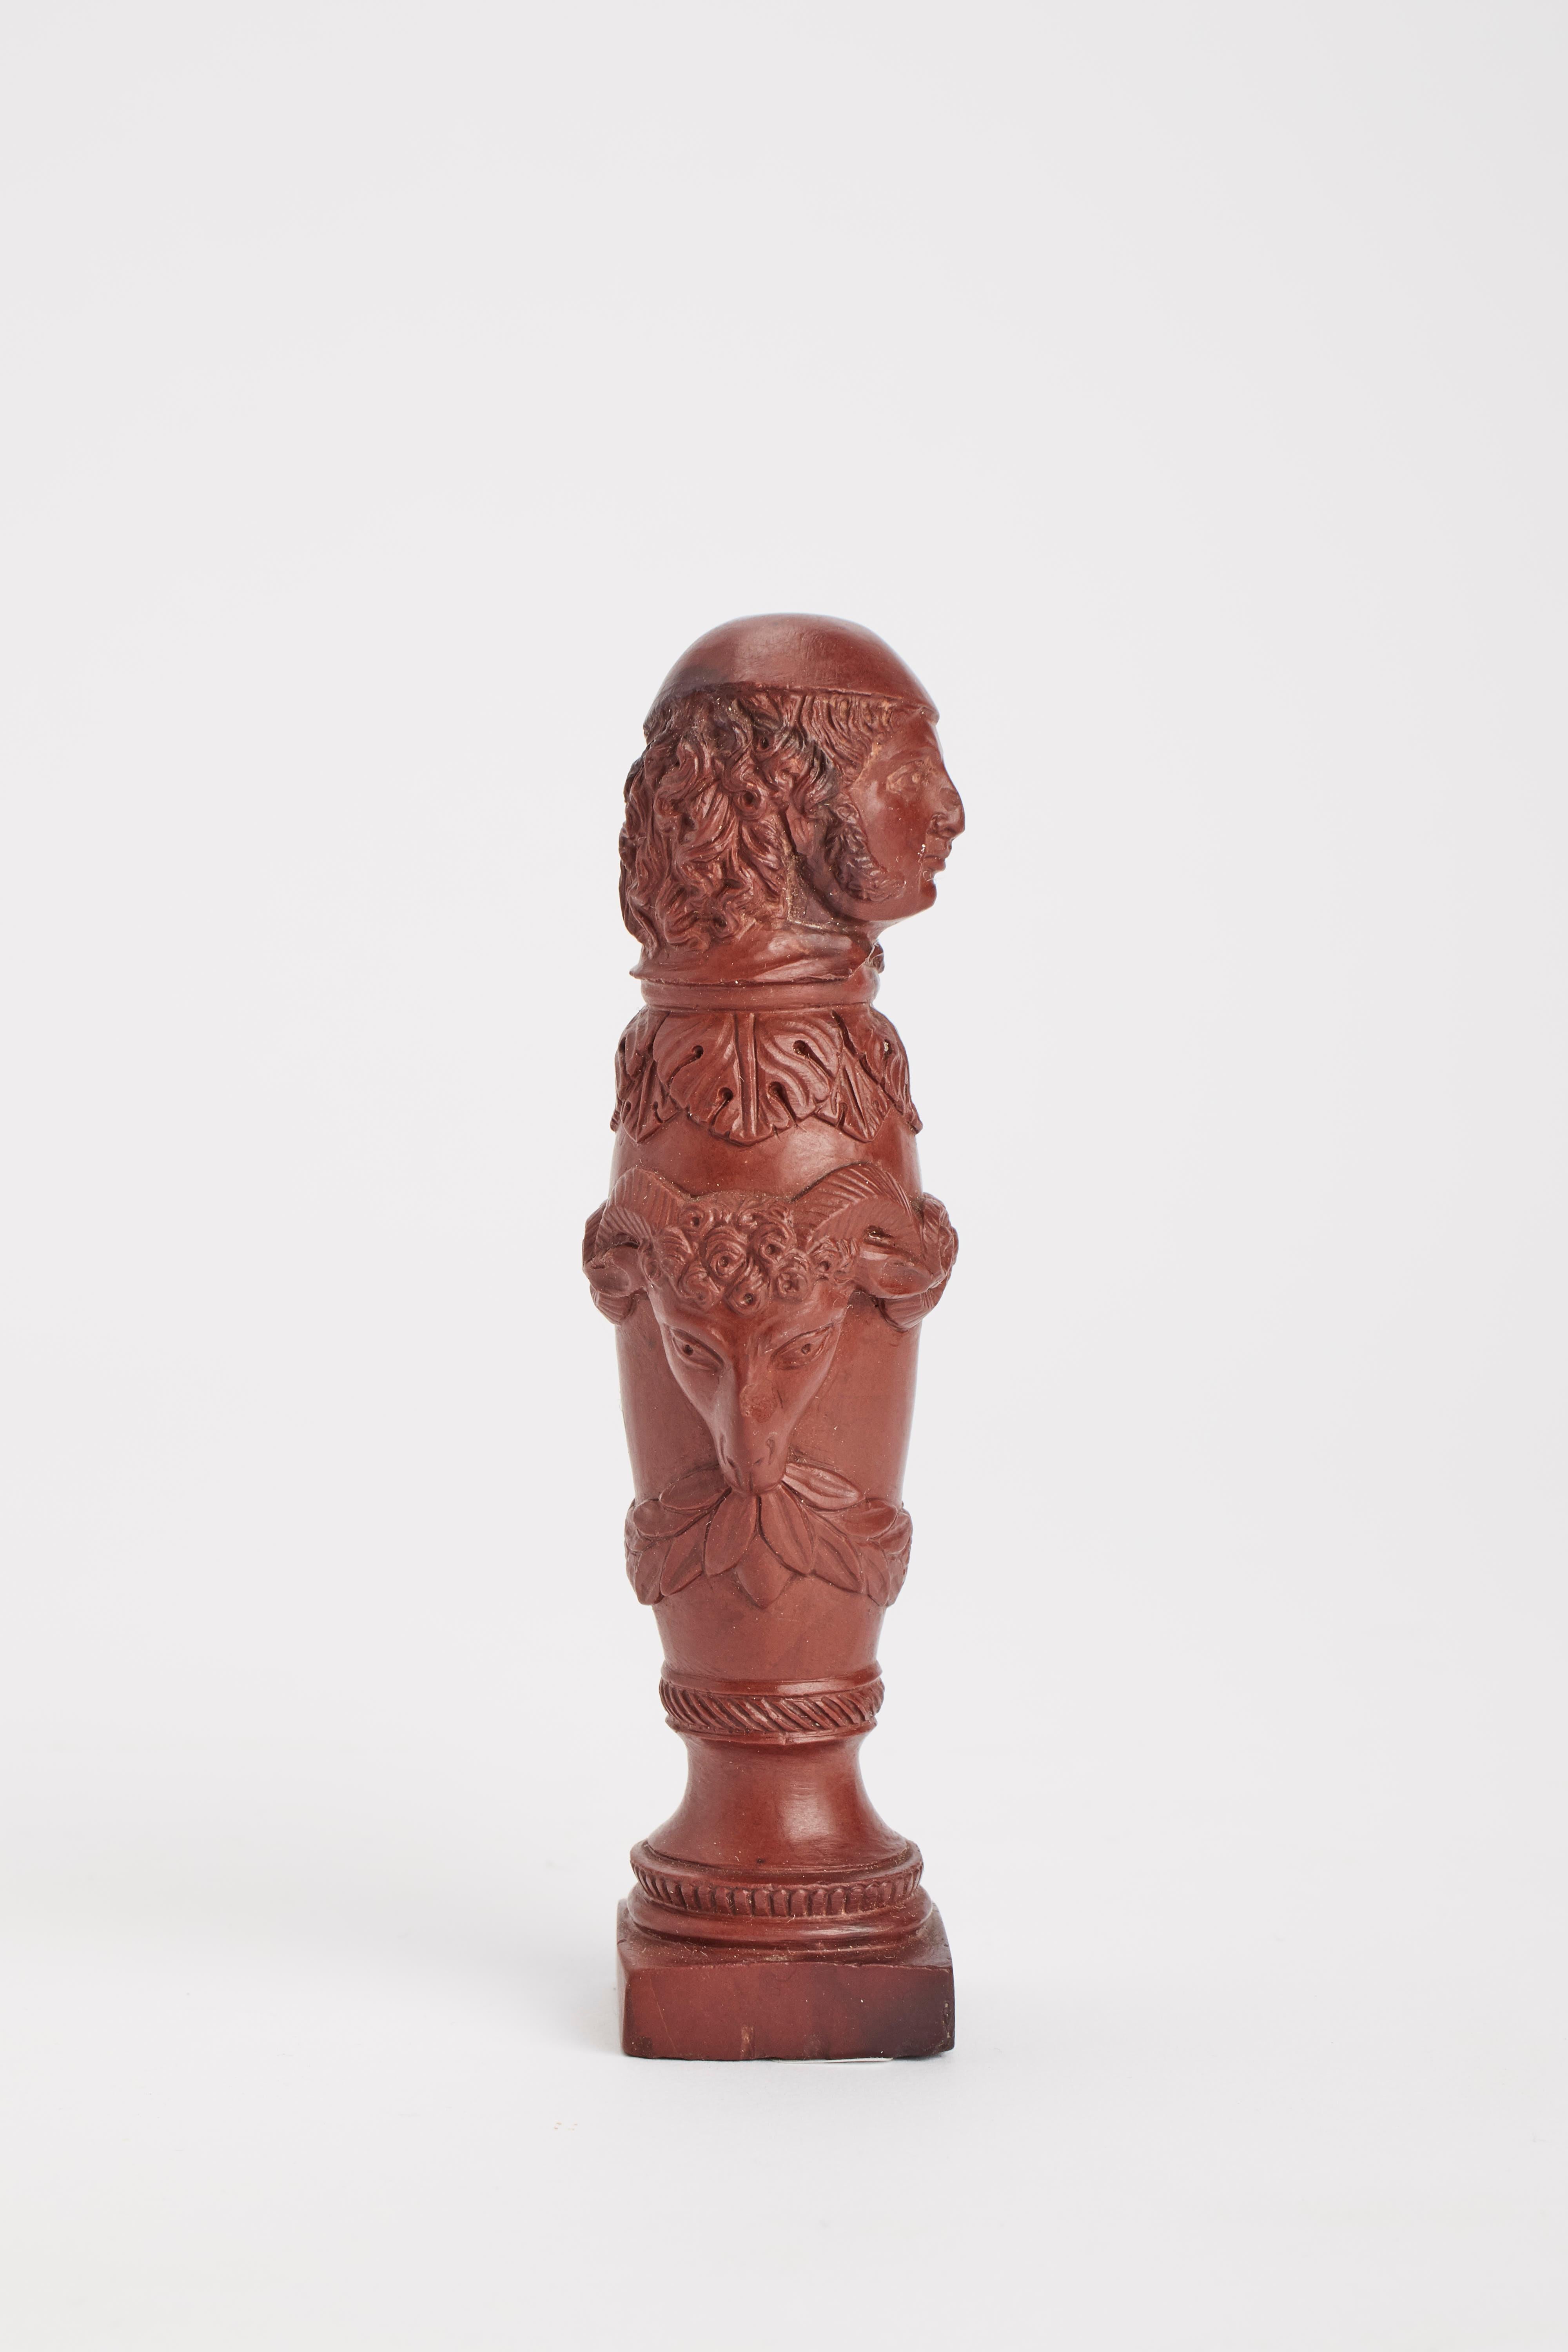 Ein klassizistisches Grand-Tour-Siegel, aus roter Lava gemeißelt, das eine italienische Figur mit Baskenmütze, Girlanden und Widderköpfen über einer stilisierten Säule abbildet. Italien 1840 ca.